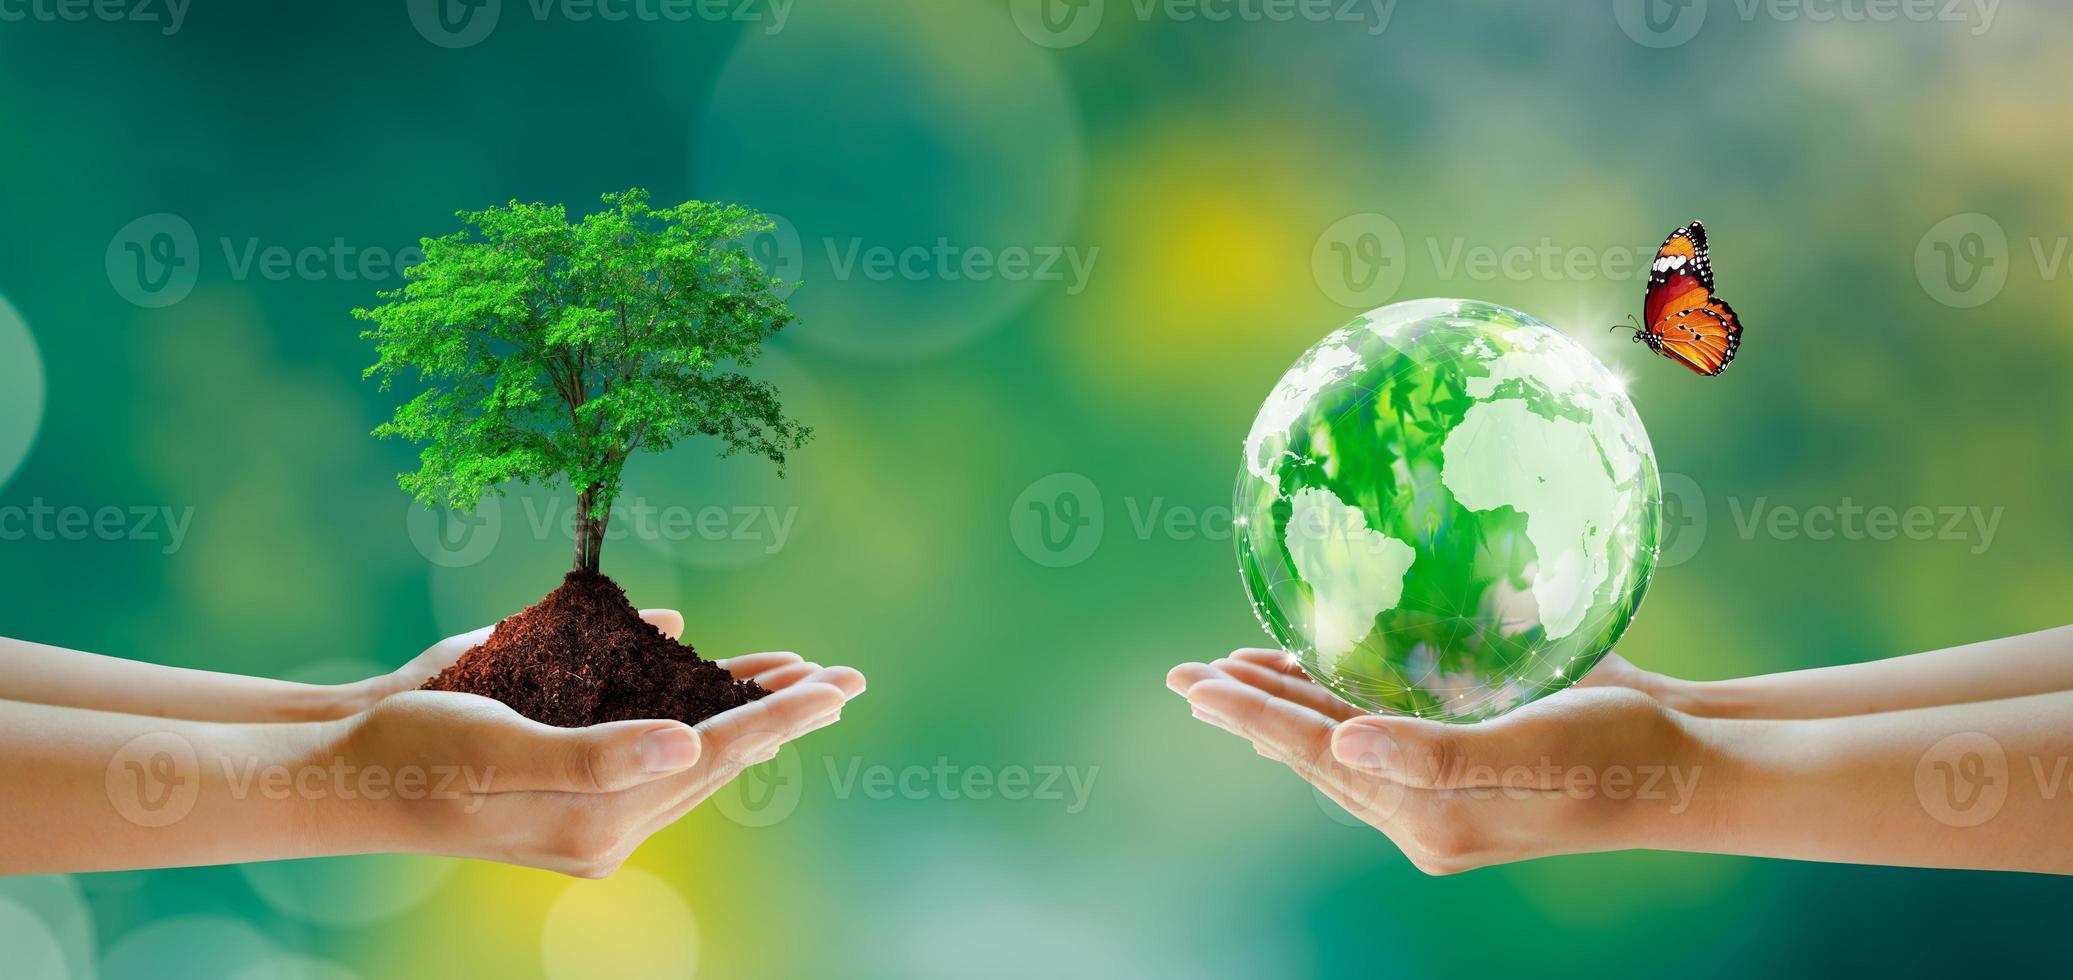 salvar planeta limpo, salvar mundo e meio ambiente, ecologia. foto